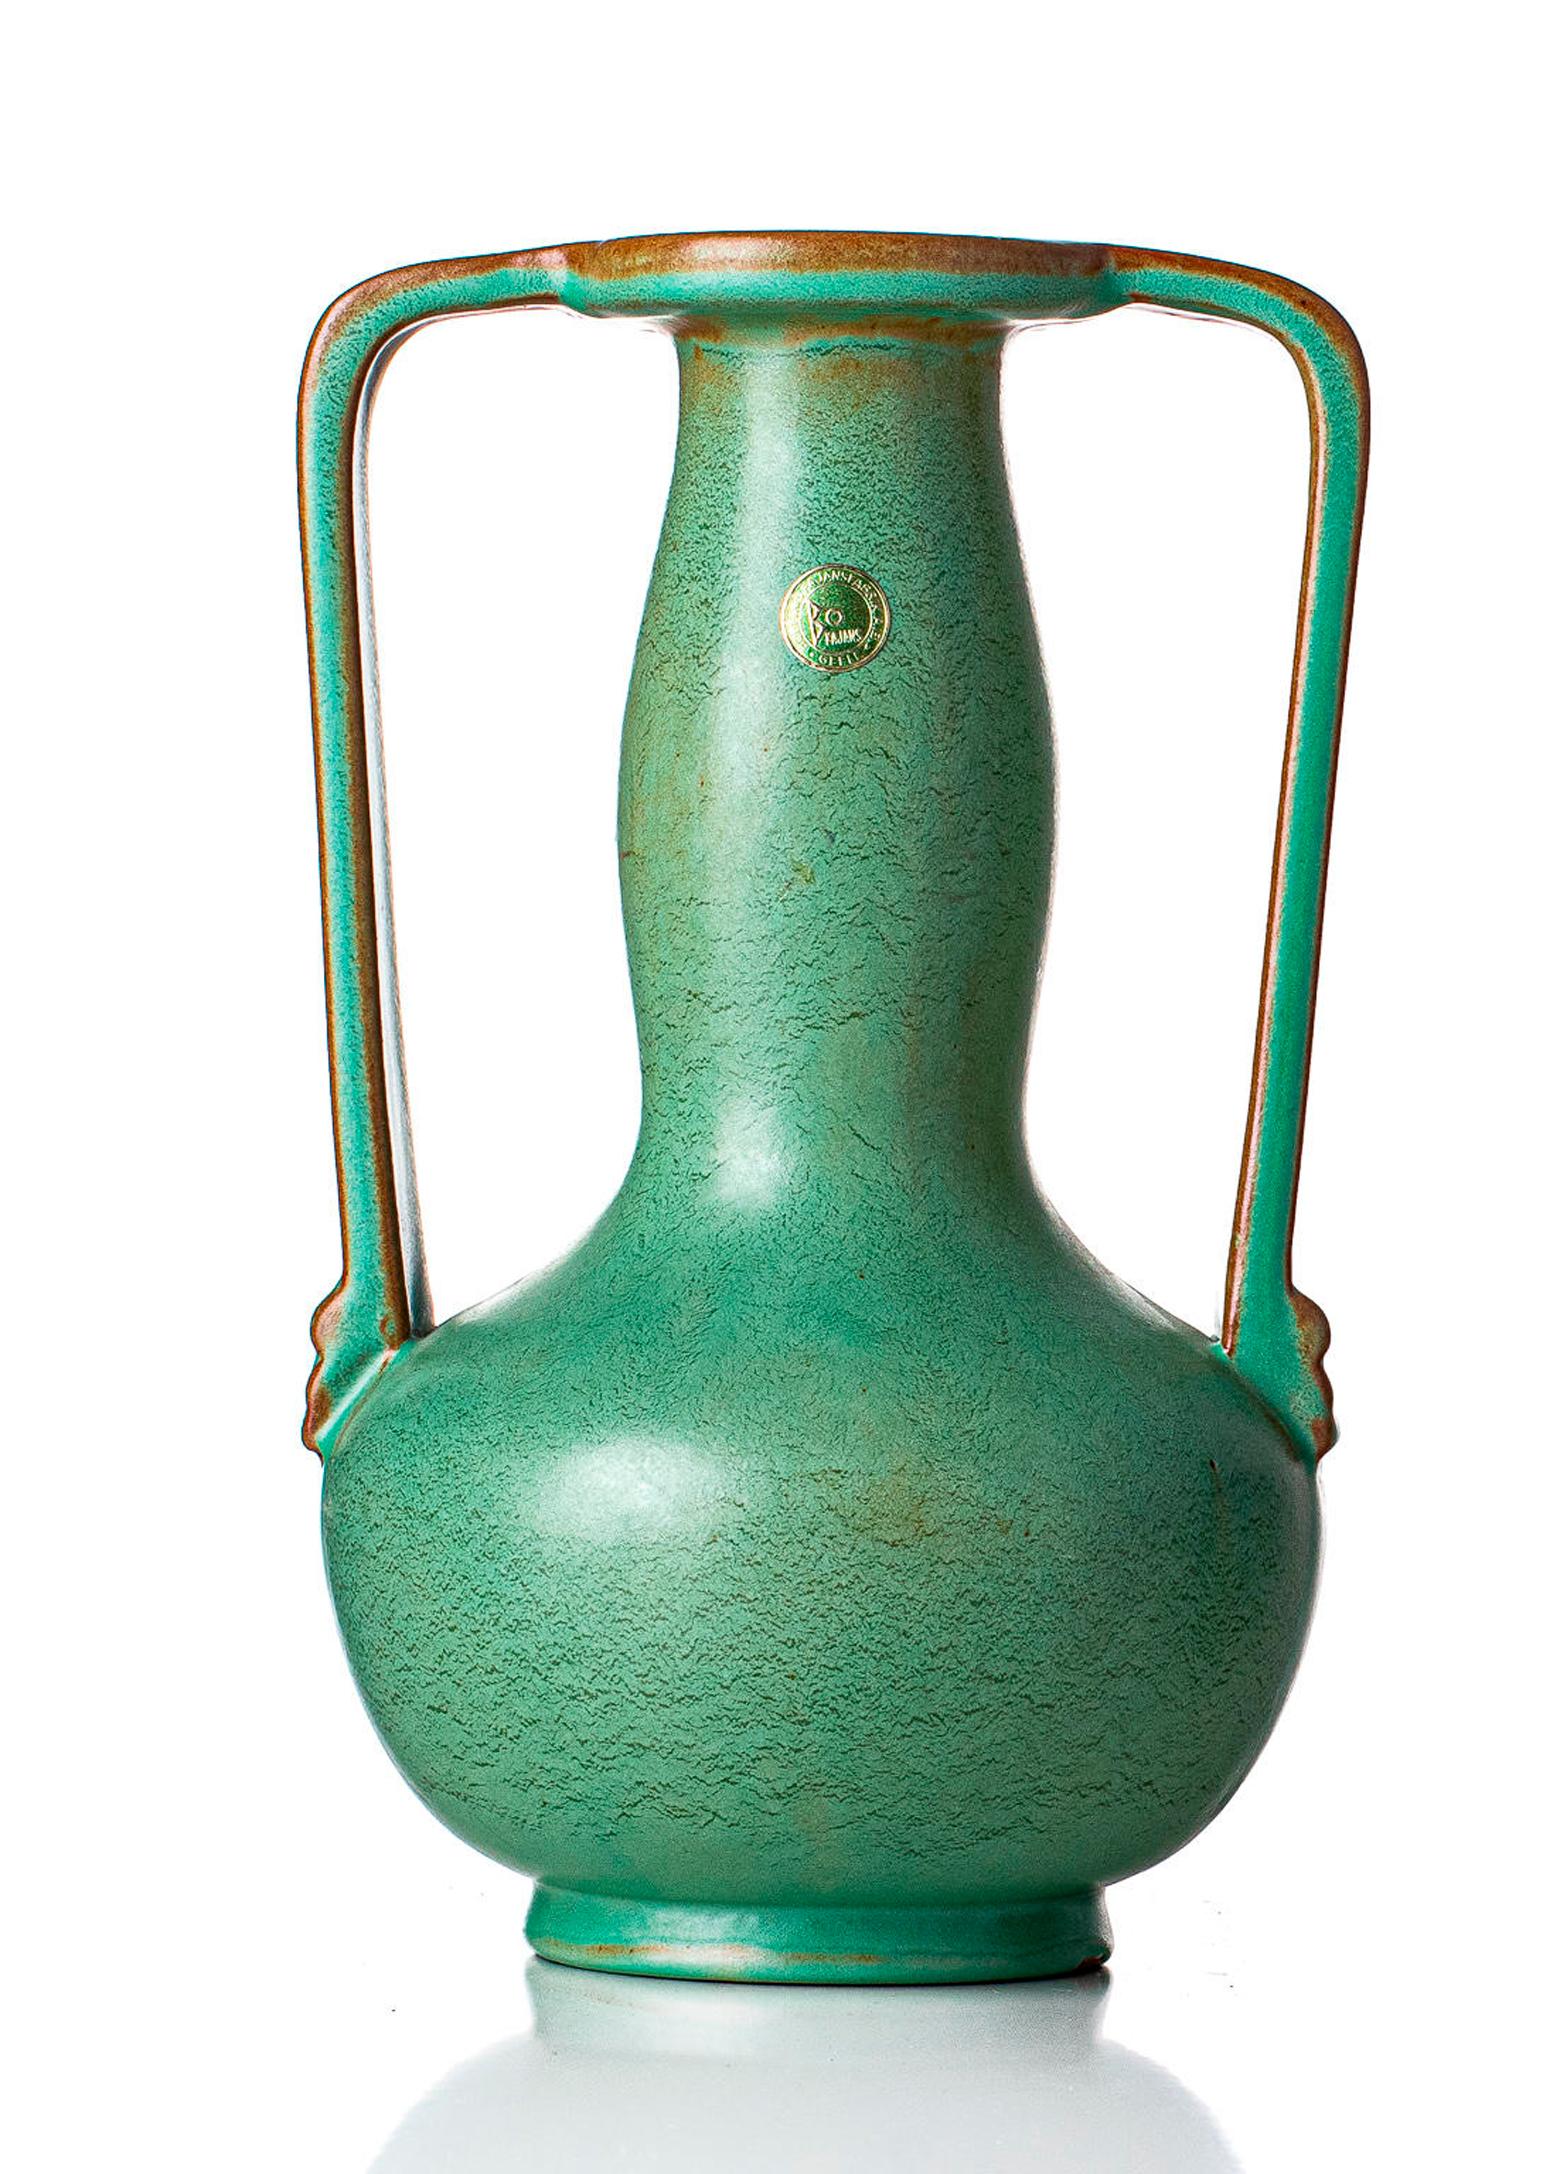 Keramikvase von Ewald Dahlskog (1894-1950), hergestellt von Bobergs Fajansfabrik. Gekennzeichnet mit M/D242-32. Die Nummer bezieht sich auf die Farbe; Celadon. Die beiden Markierungen an der Basis stammen aus dem Herstellungsprozess.